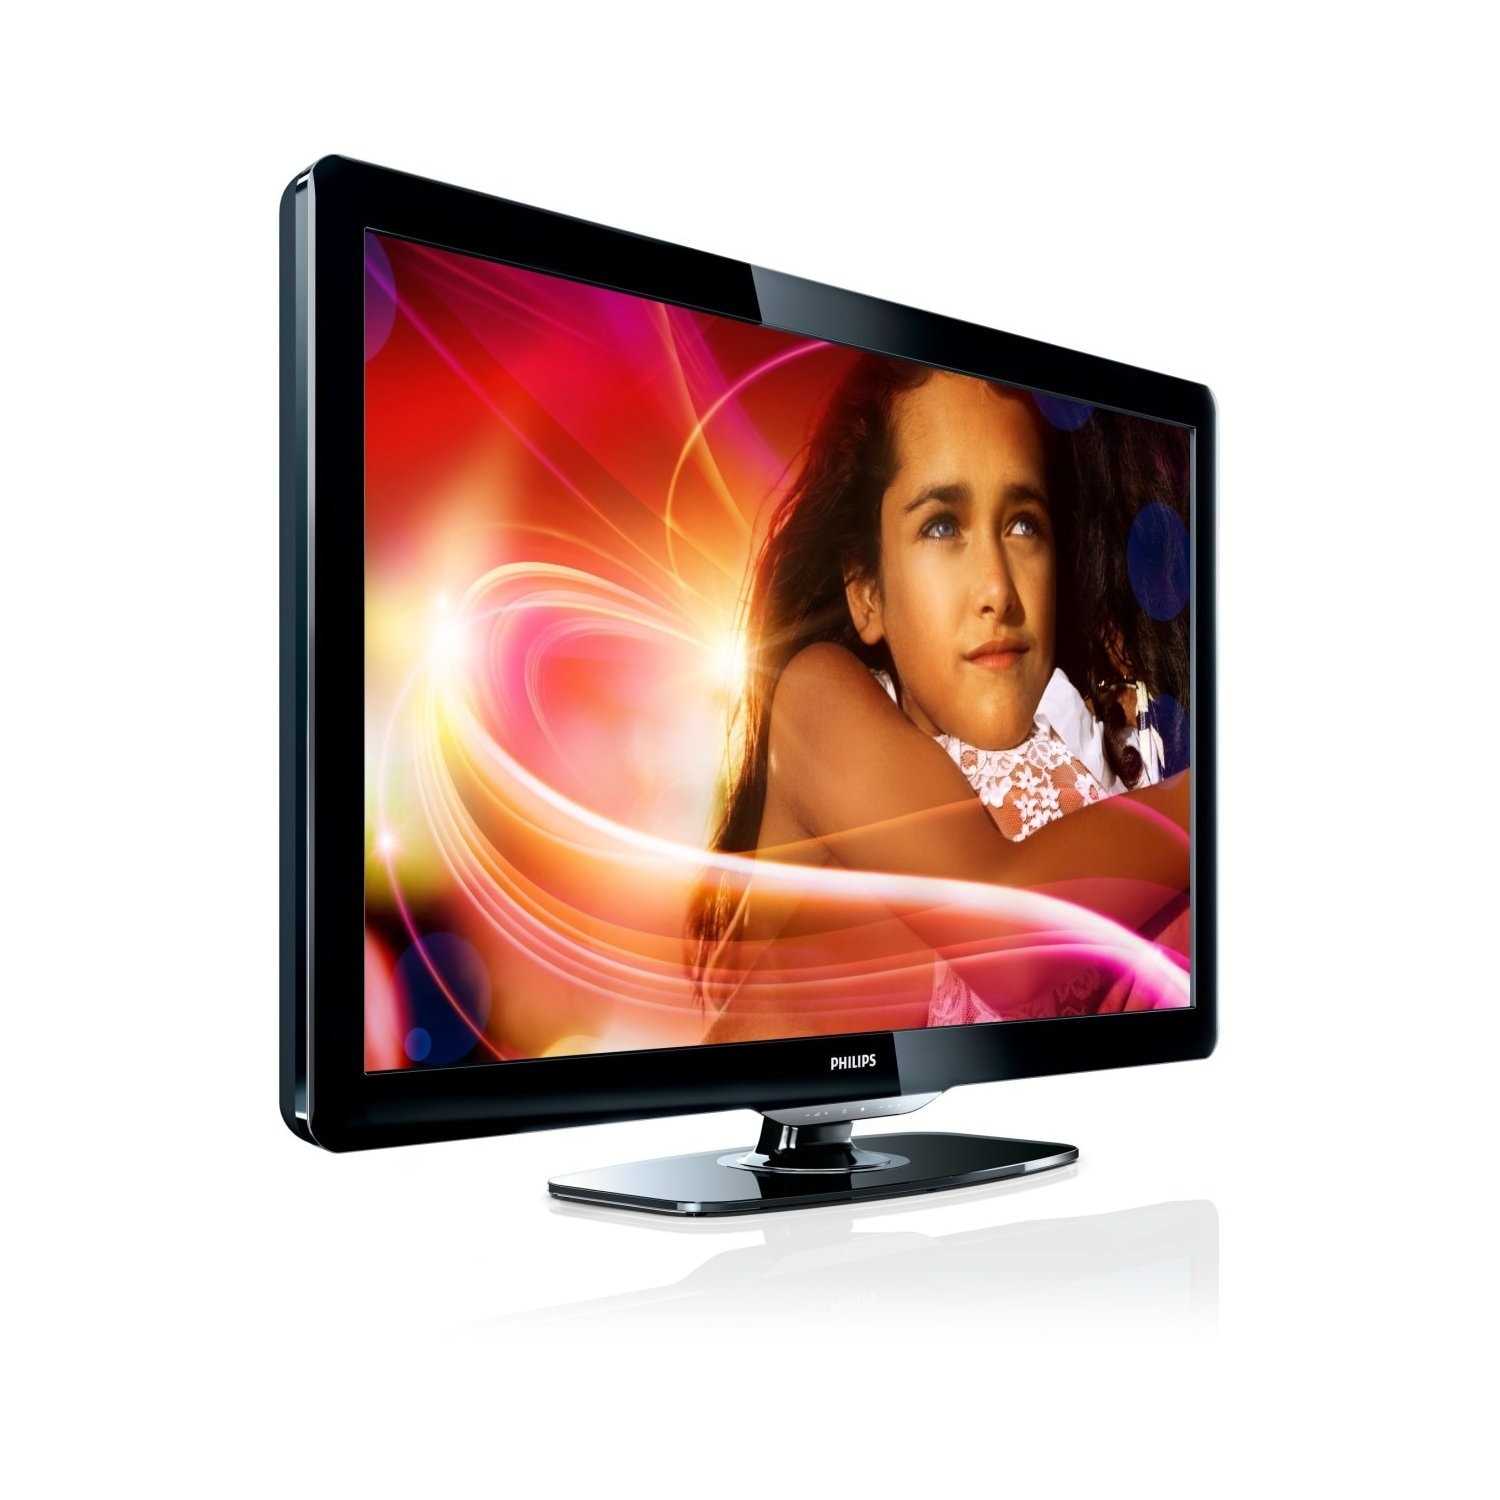 Philips 46pfl9706k - купить , скидки, цена, отзывы, обзор, характеристики - телевизоры